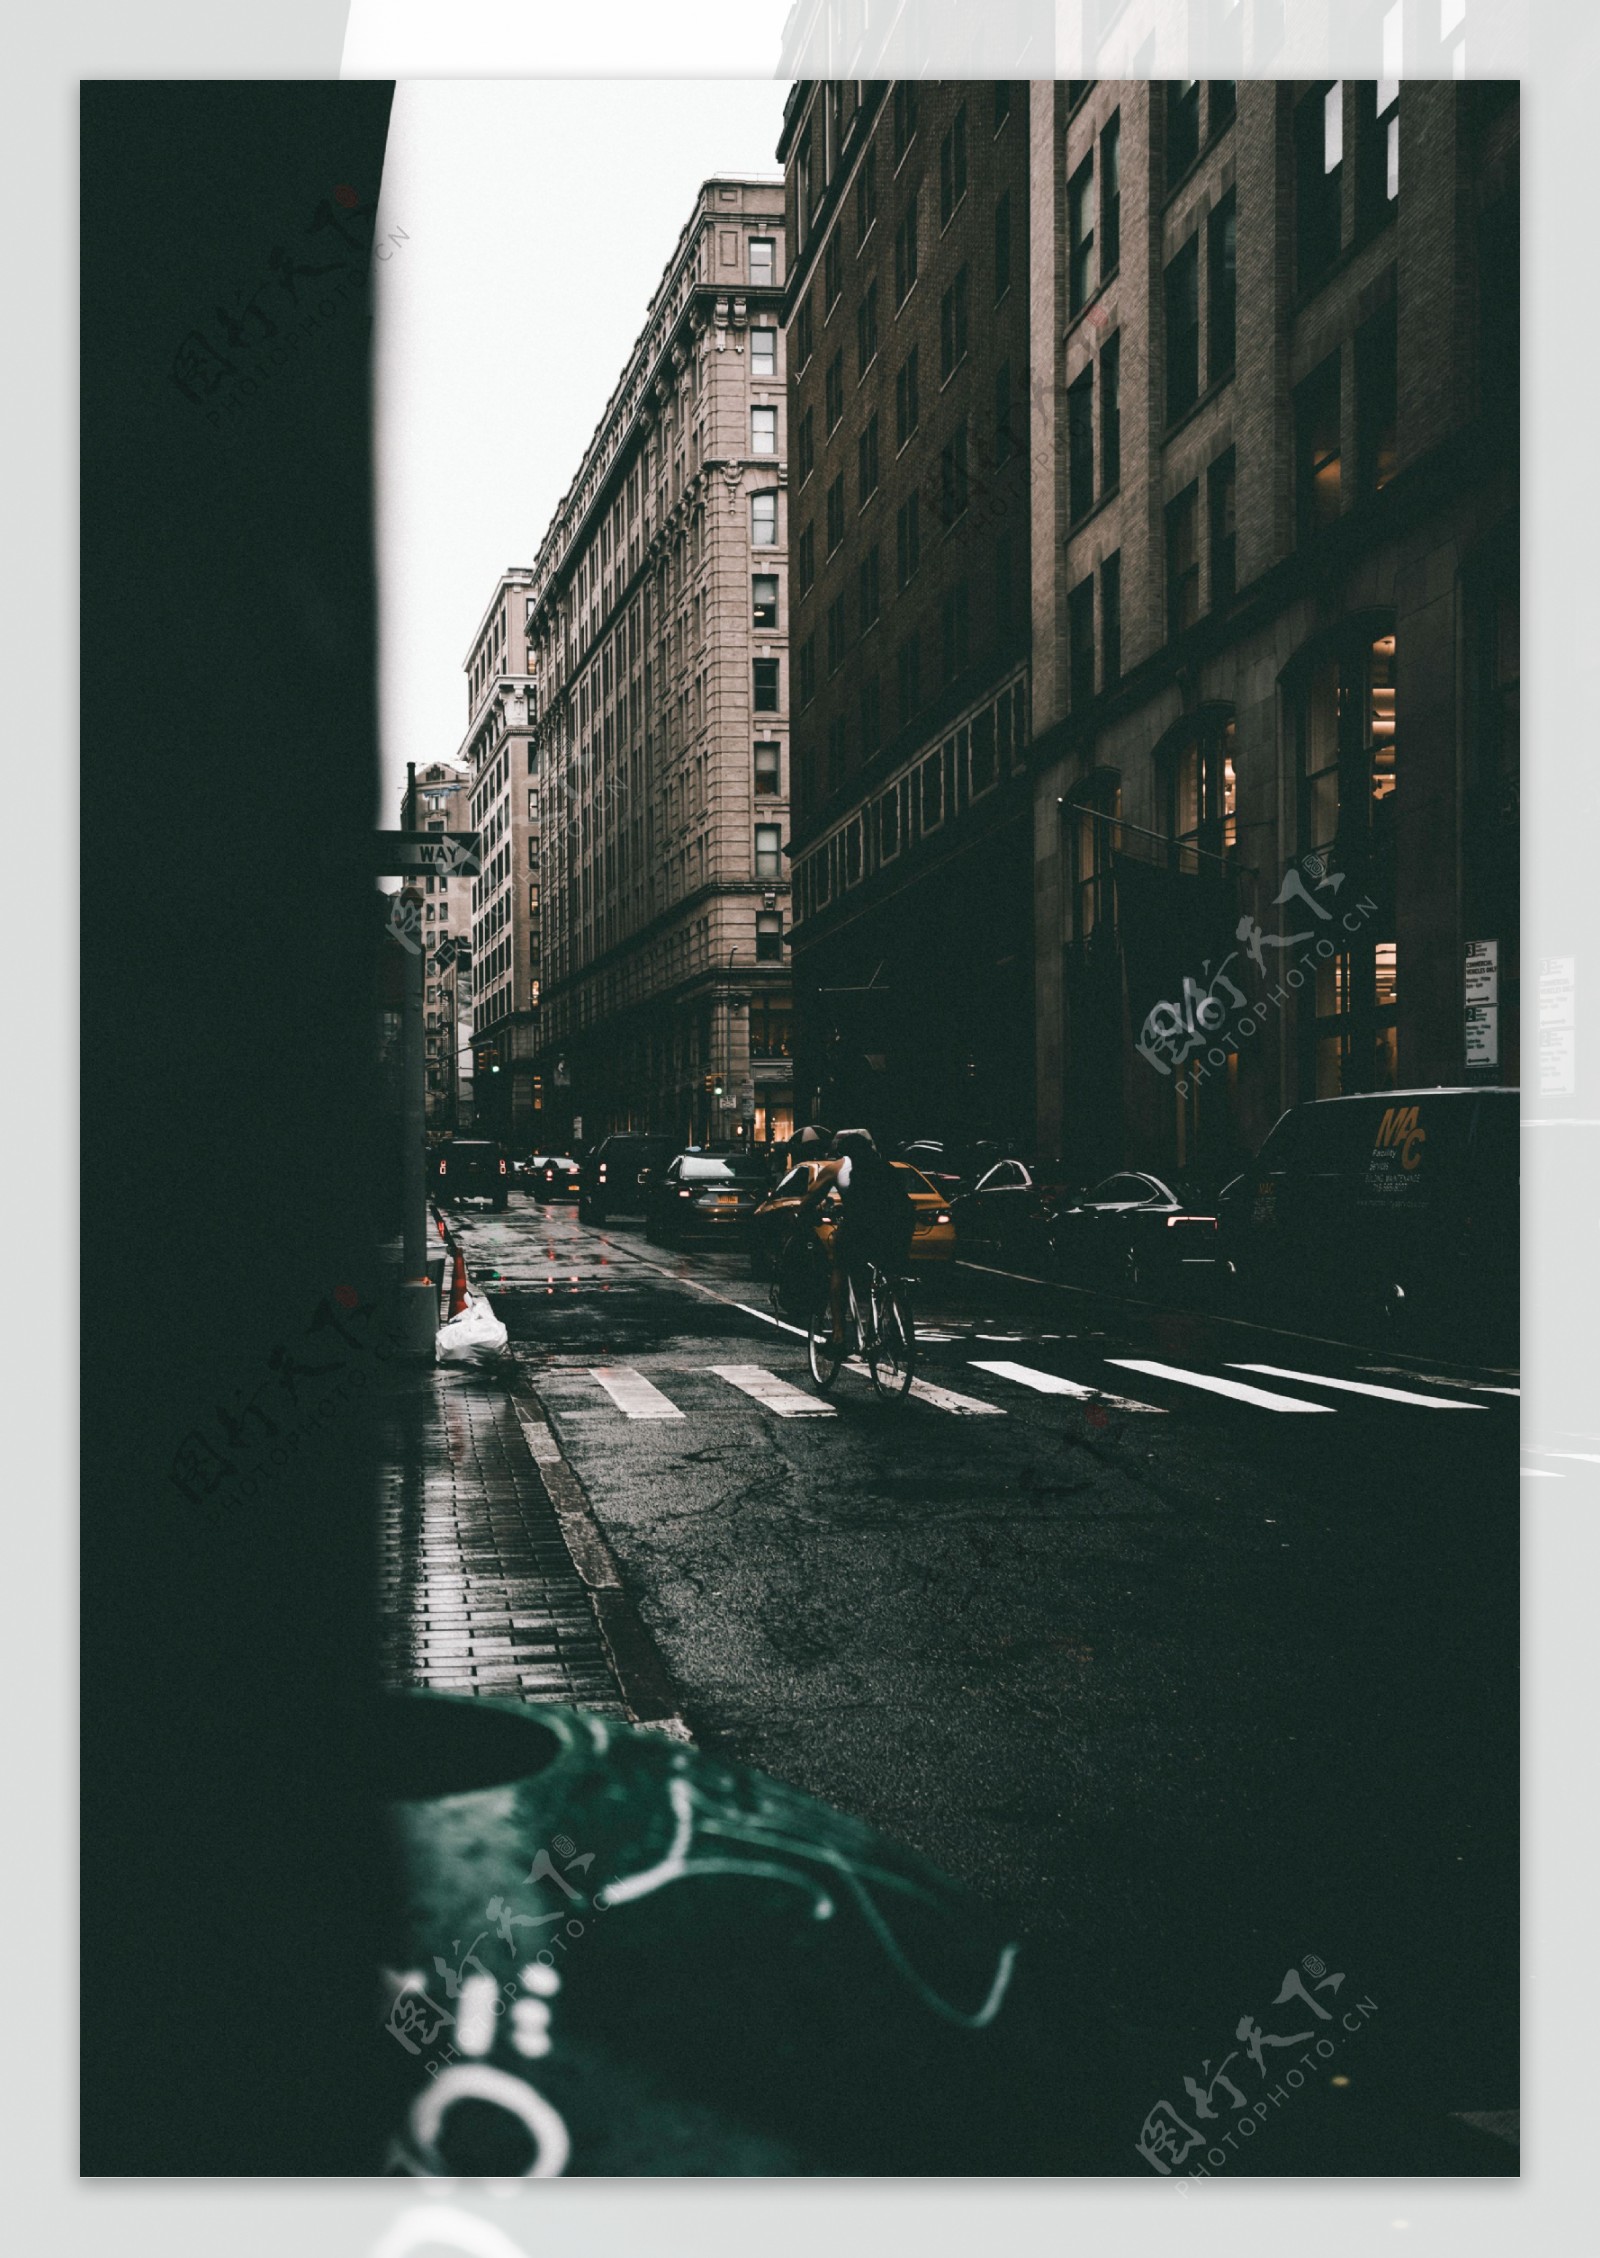 雨后街景